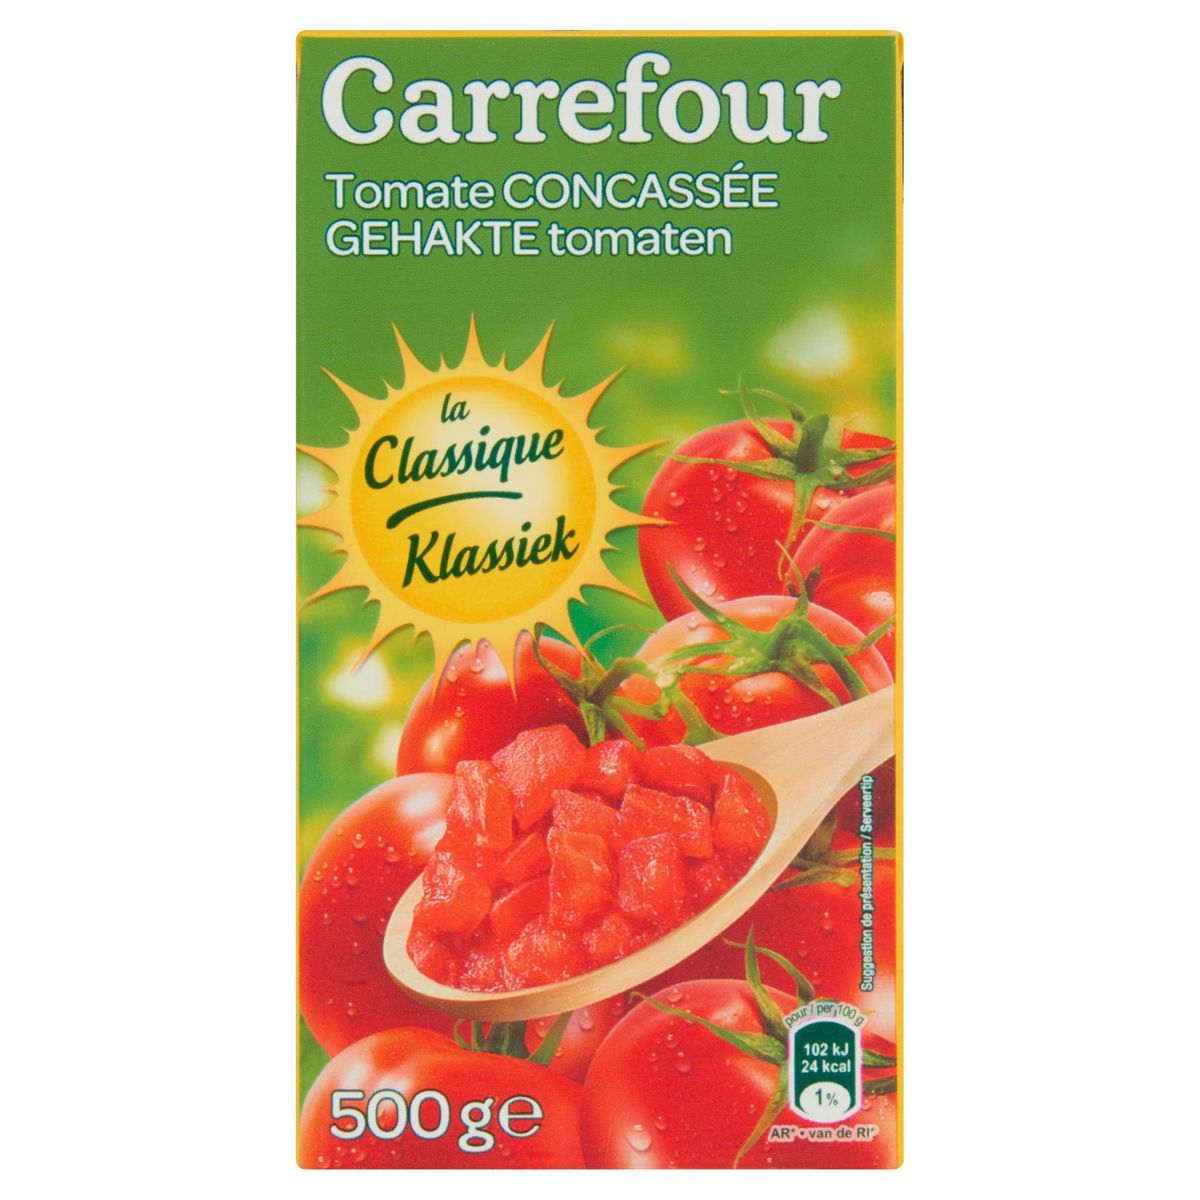 Carrefour Gehakte Tomaten Klassiek 500 g